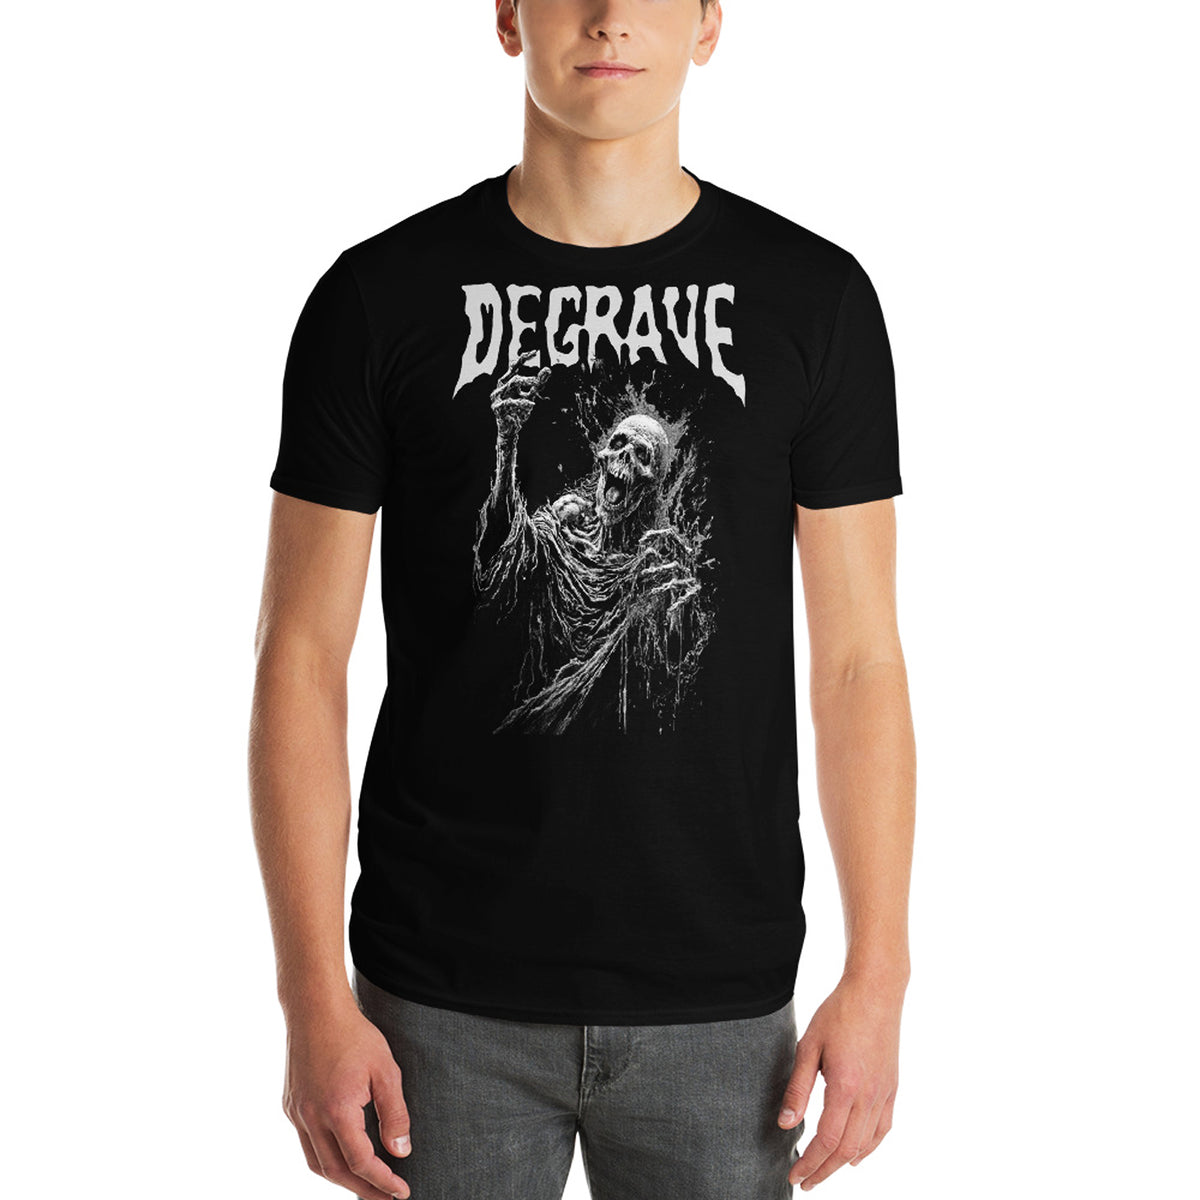 DEGRAVE - Skeletal Death T-Shirt – Horror Pain Gore Death Productions Shop